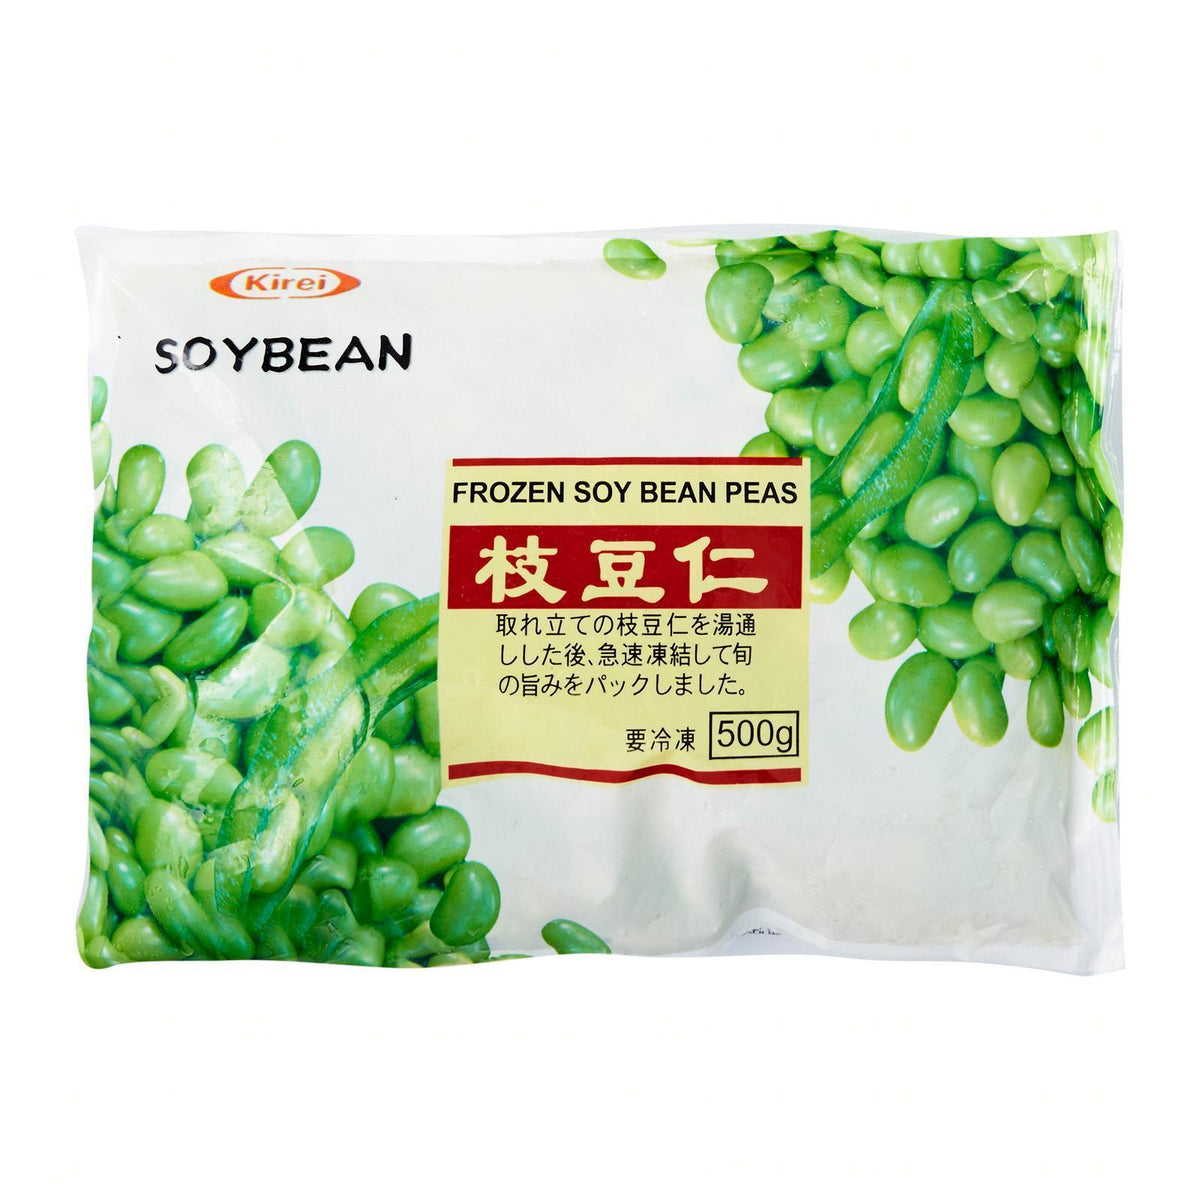 Japan　Honeydaes　Online　Edamame　冷凍むき枝豆　500g　Seed　Foods　Grocery　Kirei　—